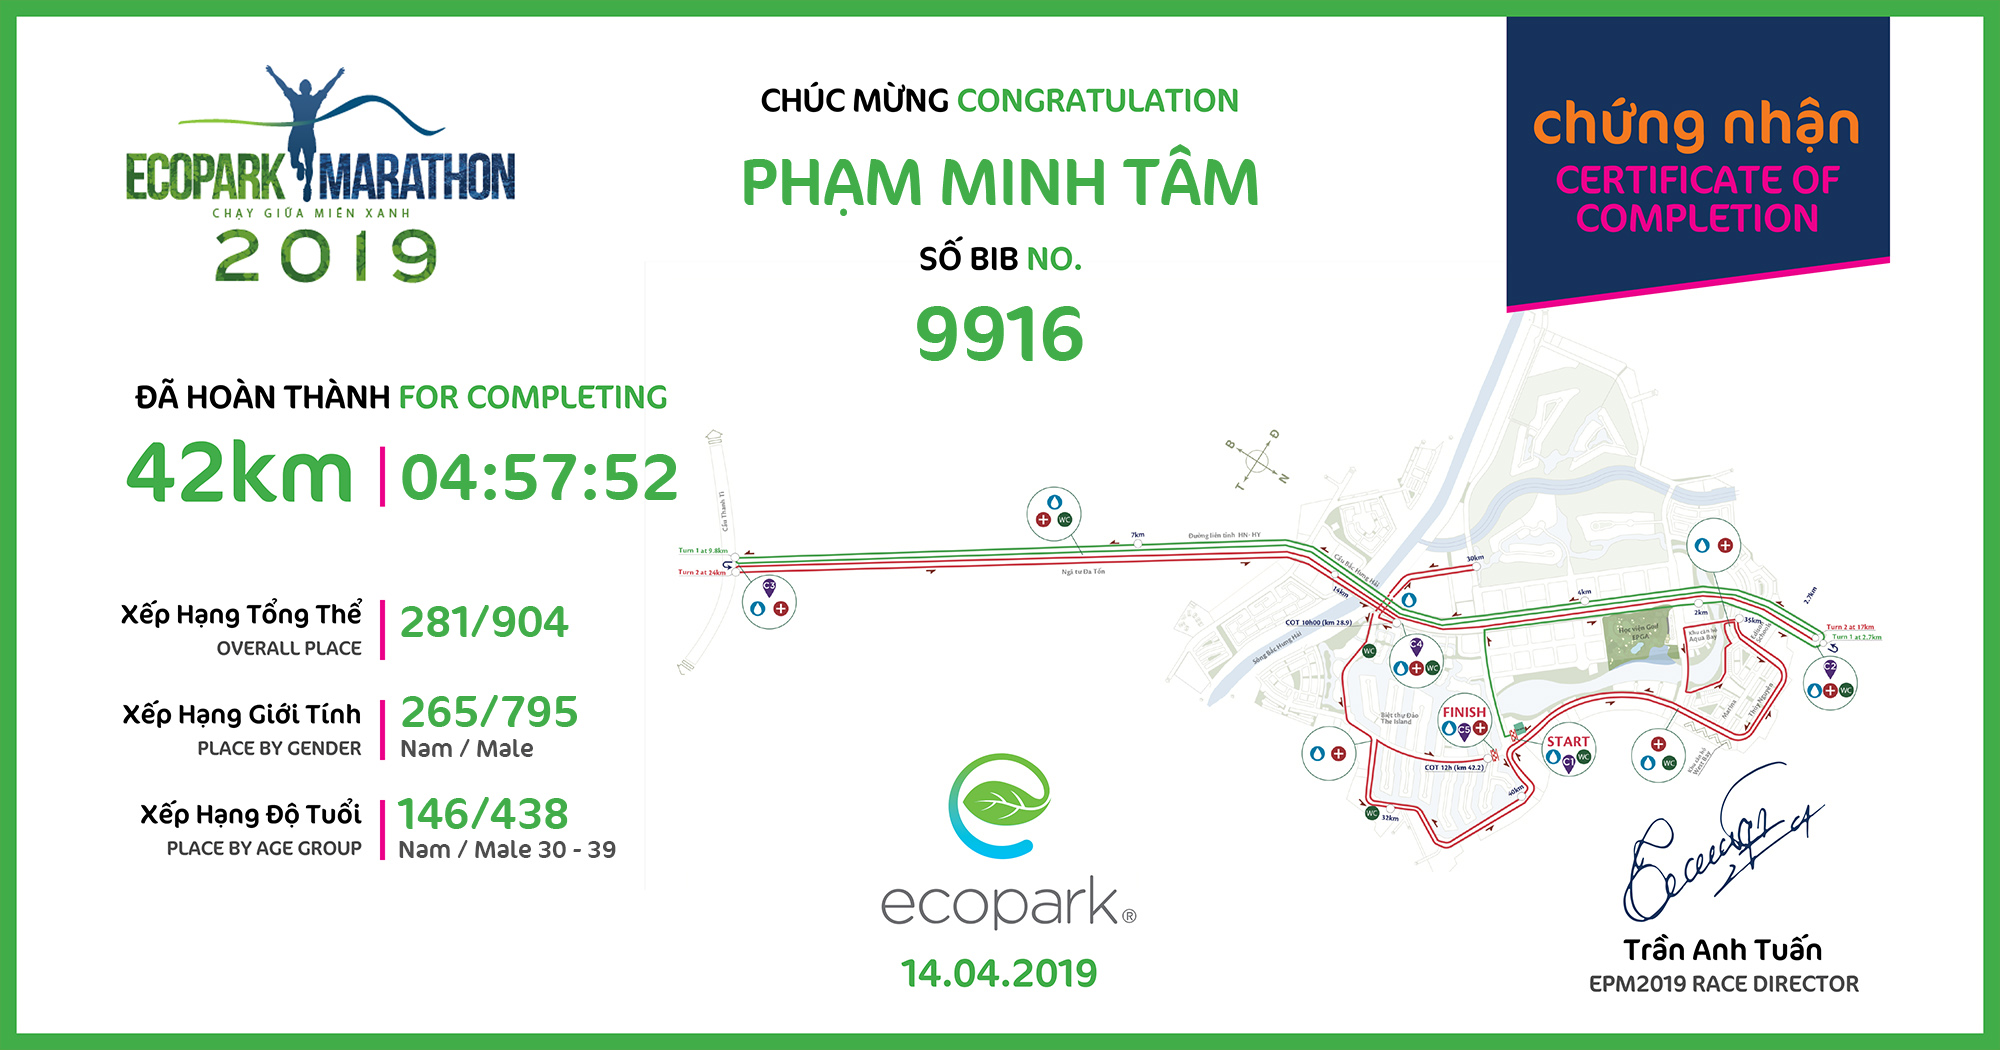 9916 - Phạm Minh Tâm